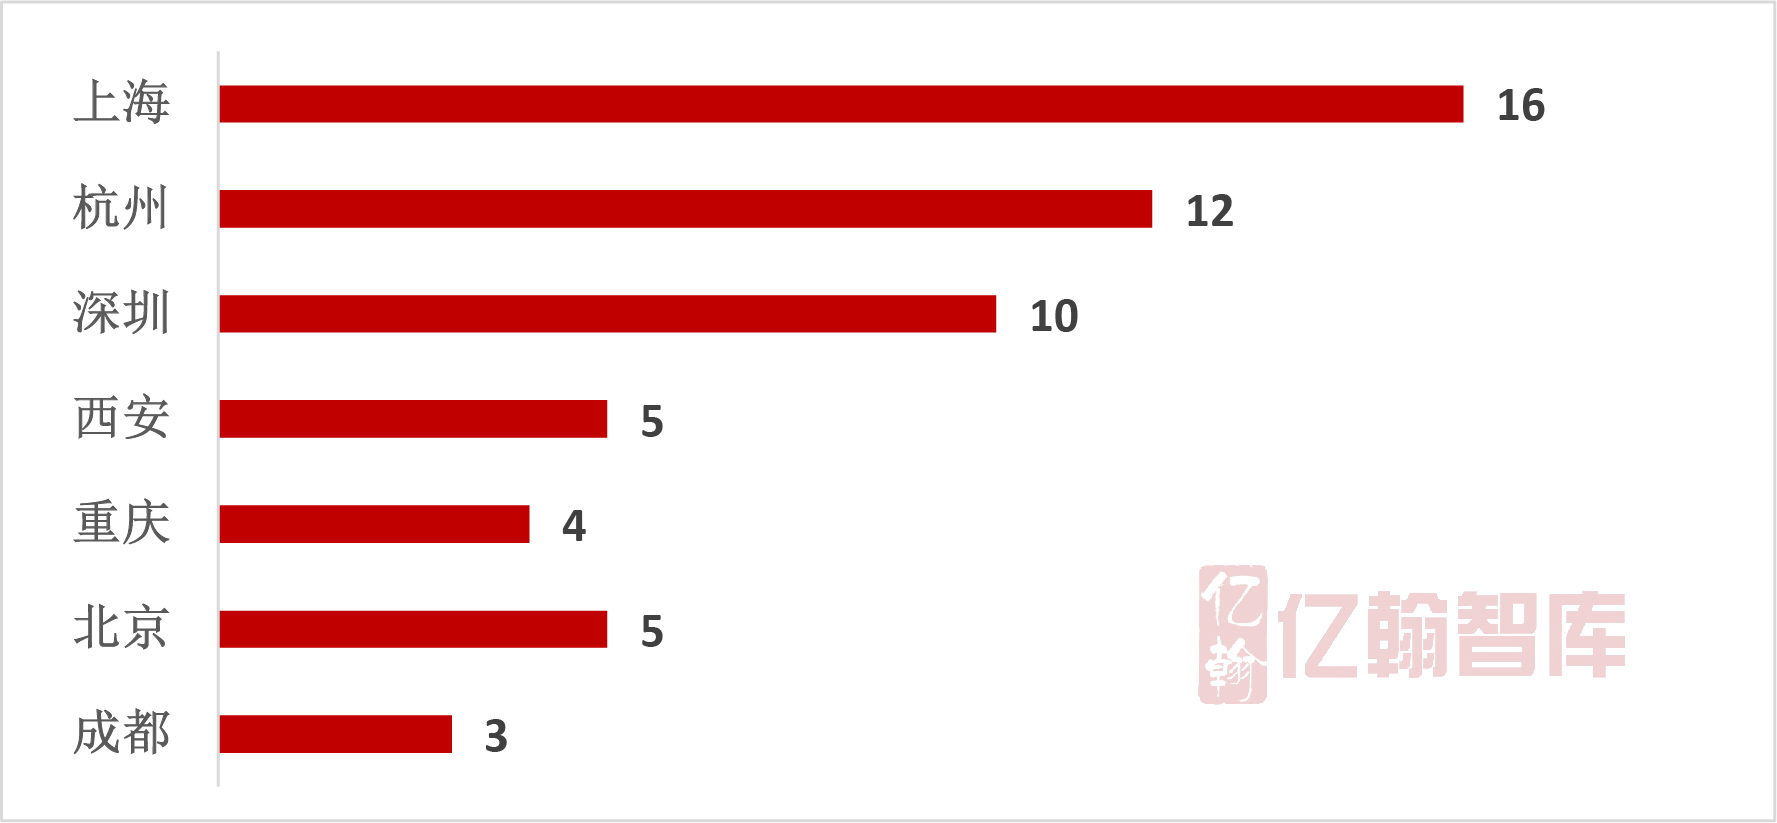 2018年1-8月中國典型房企單項目銷售業績TOP100 “金九”好戲欲提前上演-中國網地産